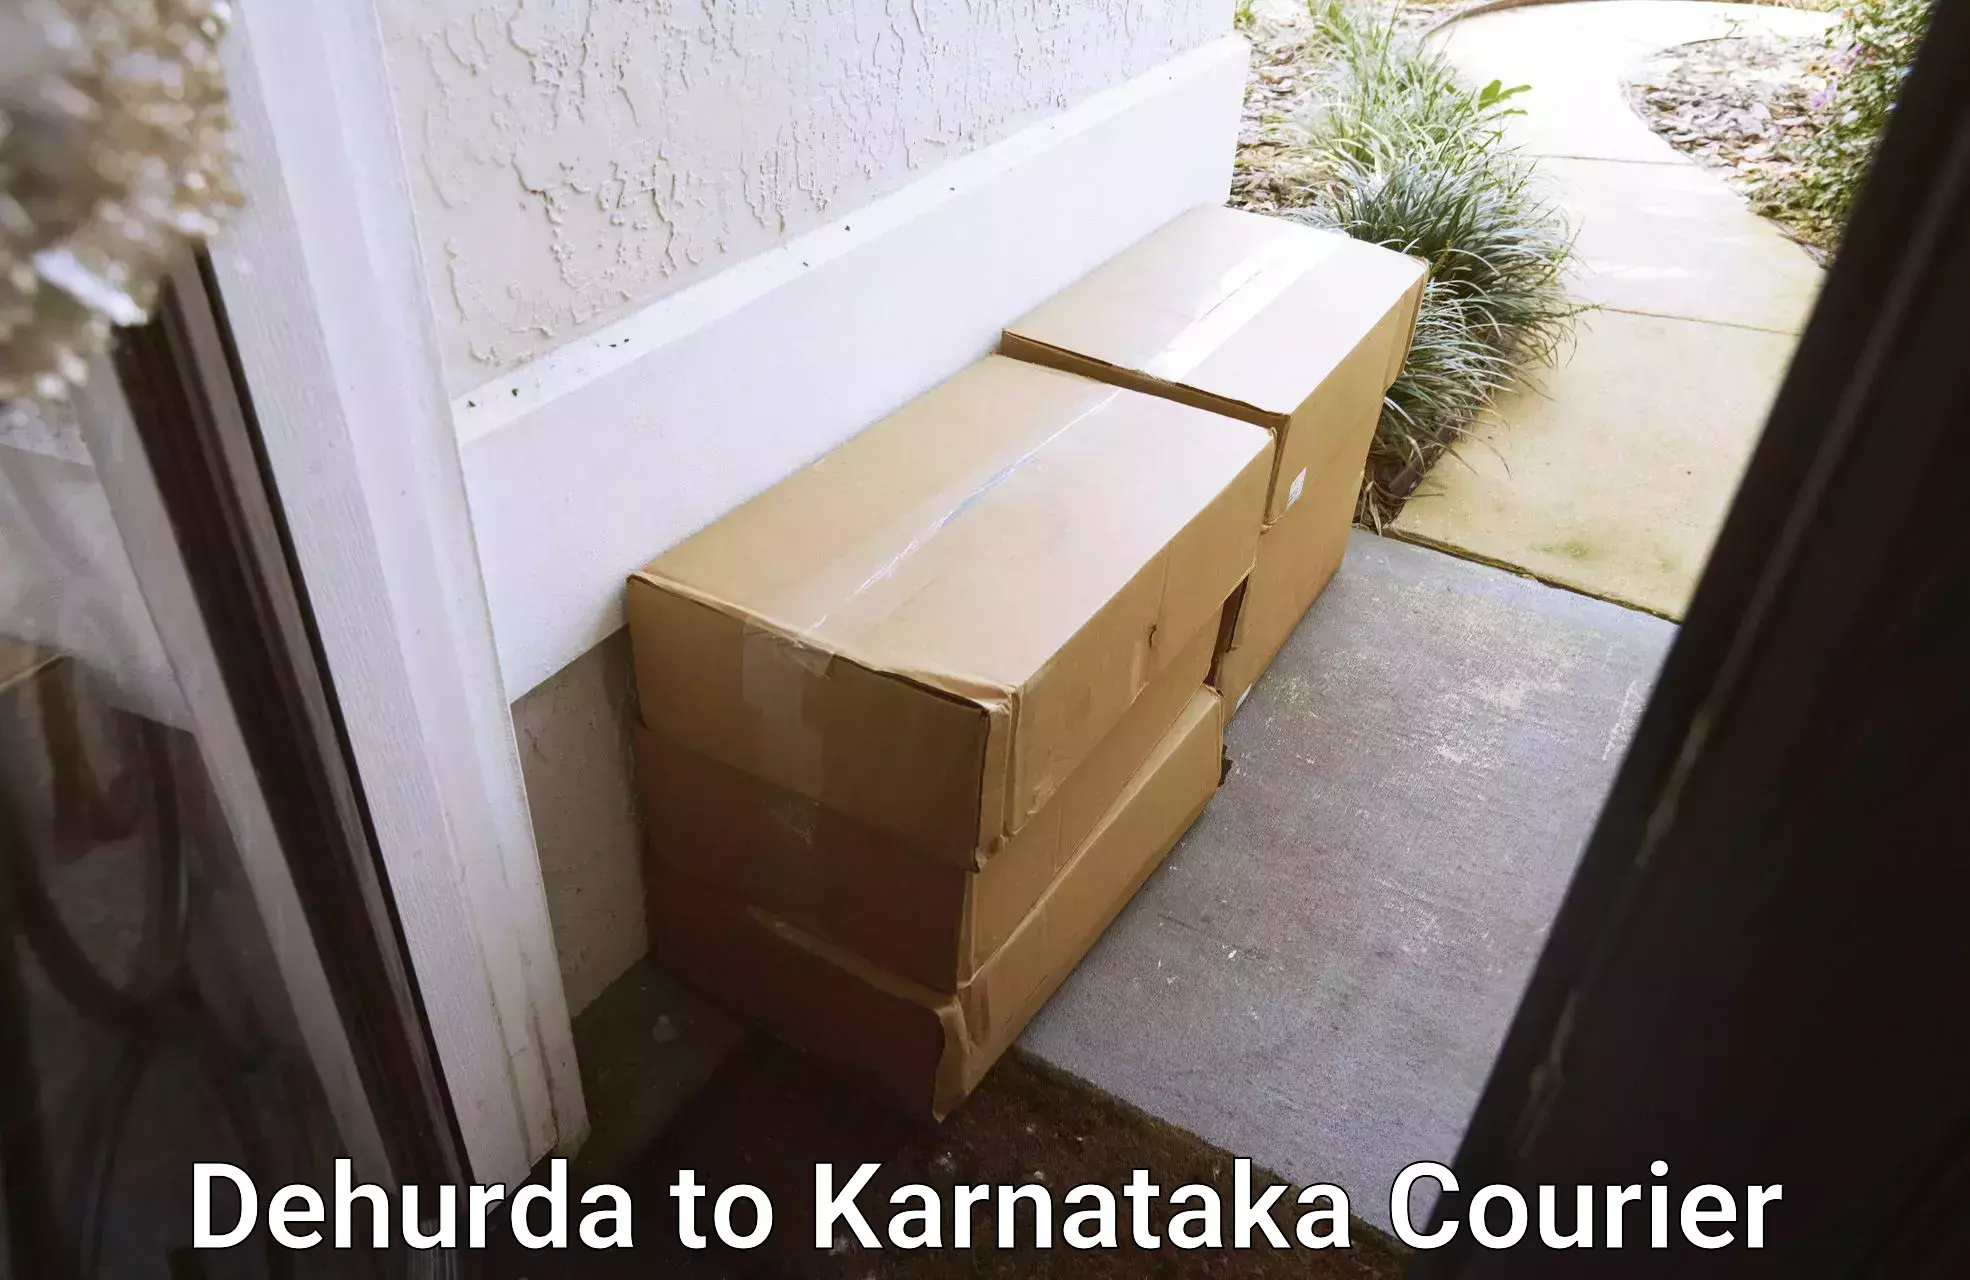 Small parcel delivery Dehurda to Chikodi